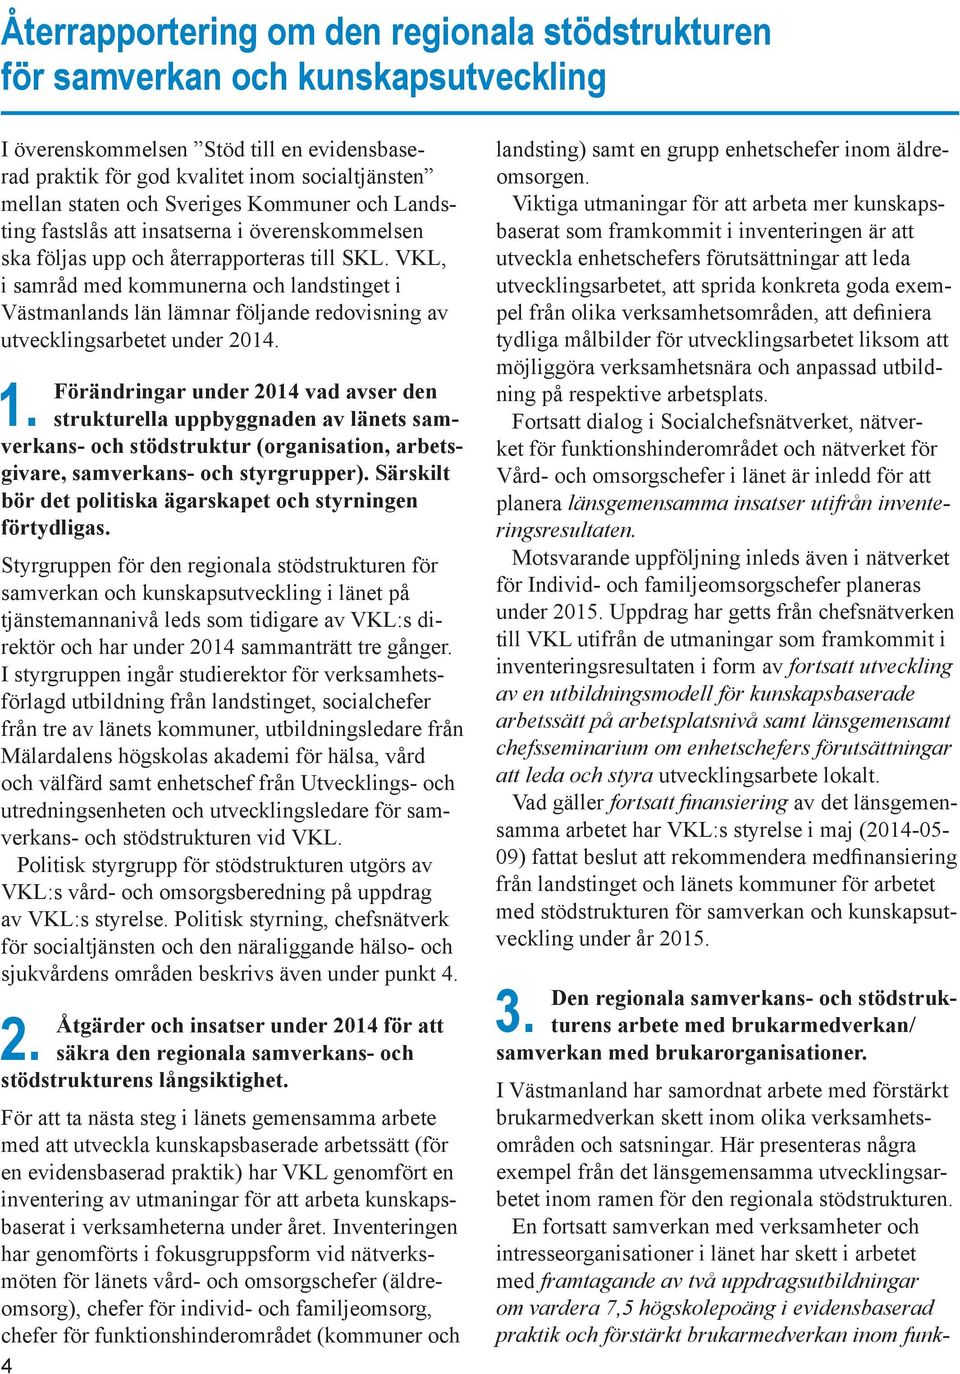 VKL, i samråd med kommunerna och landstinget i Västmanlands län lämnar följande redovisning av utvecklingsarbetet under 2014. 1.